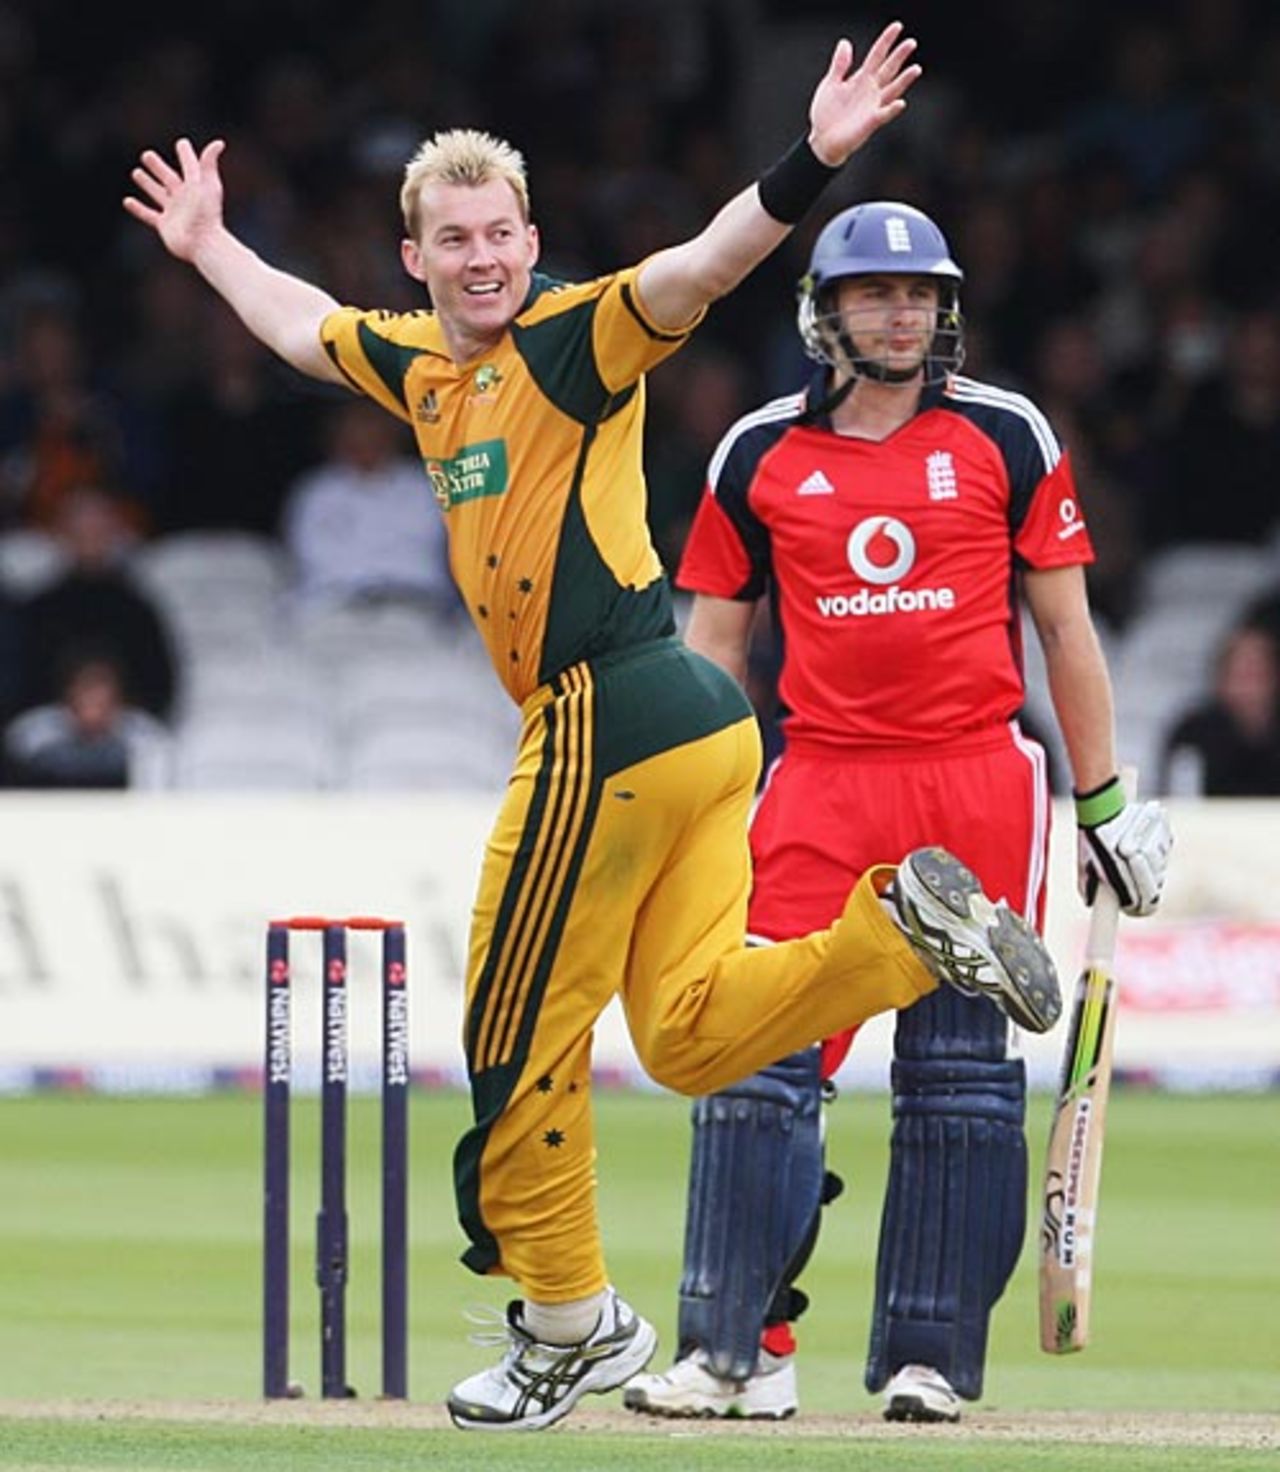 Brett Lee had Luke Wright caught behind, England v Australia, 2nd ODI, Lord's, September 6, 2009